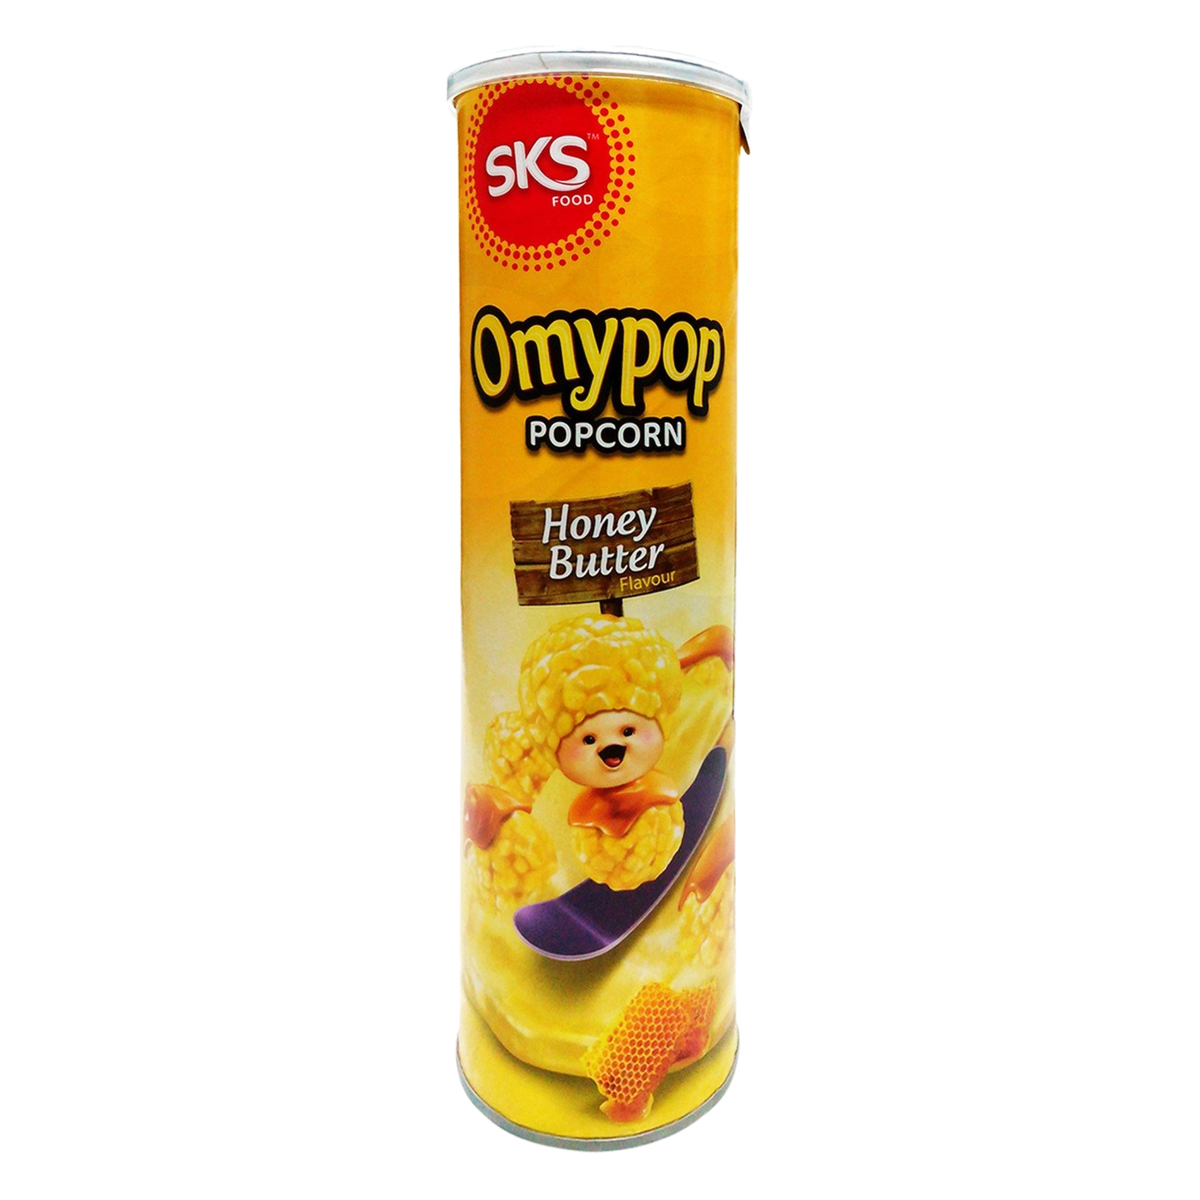 SKS Omypop Popcorn Honey Butter 85g